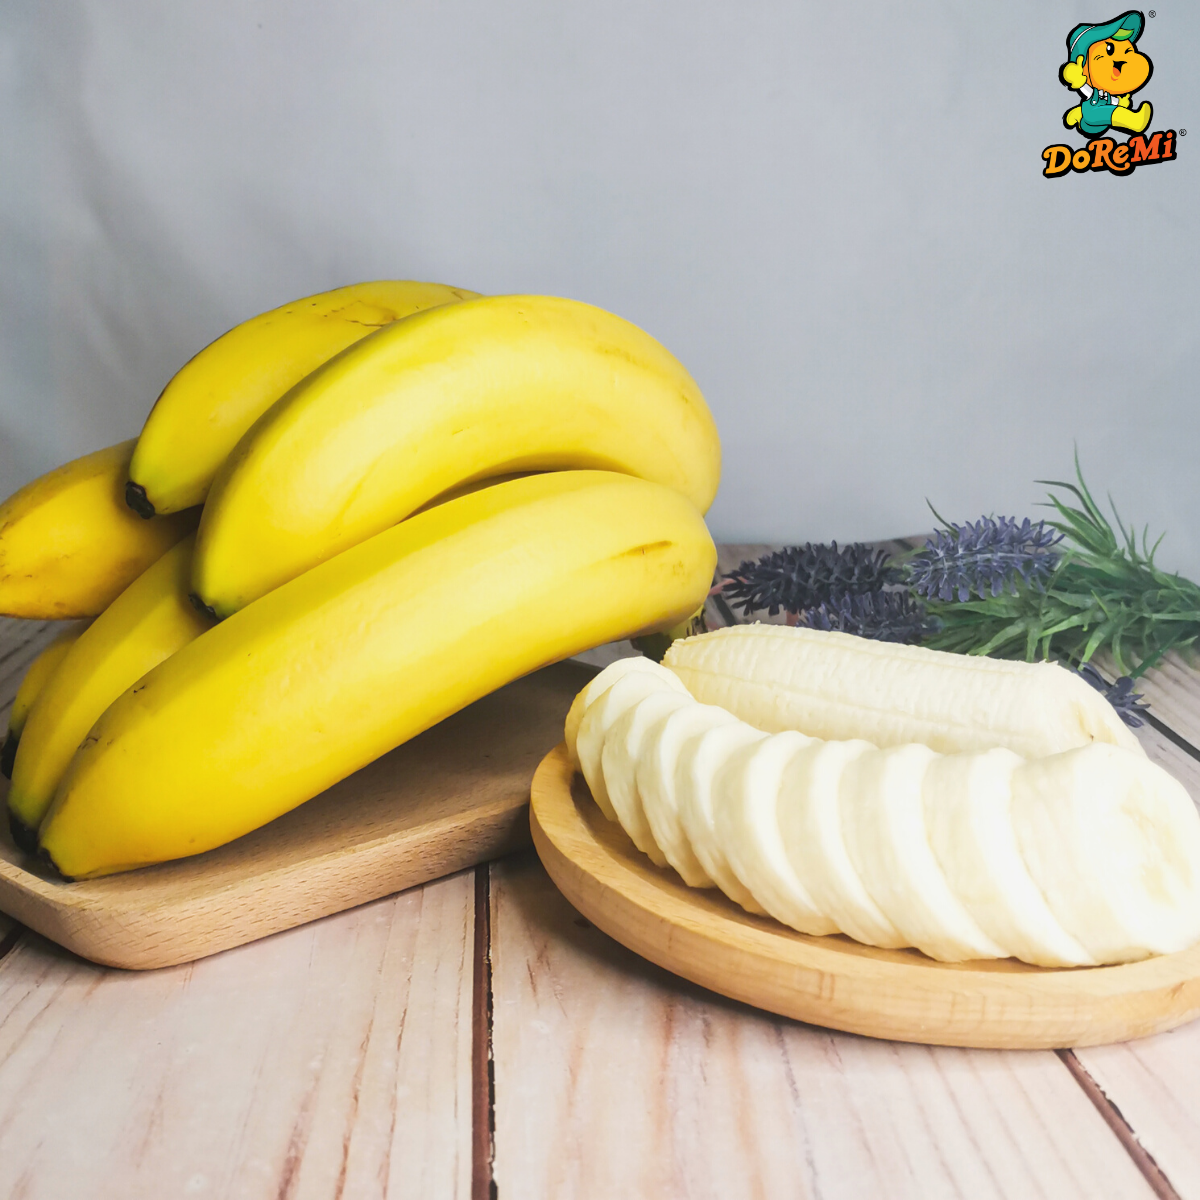 Banana (800g-1kg+/-)